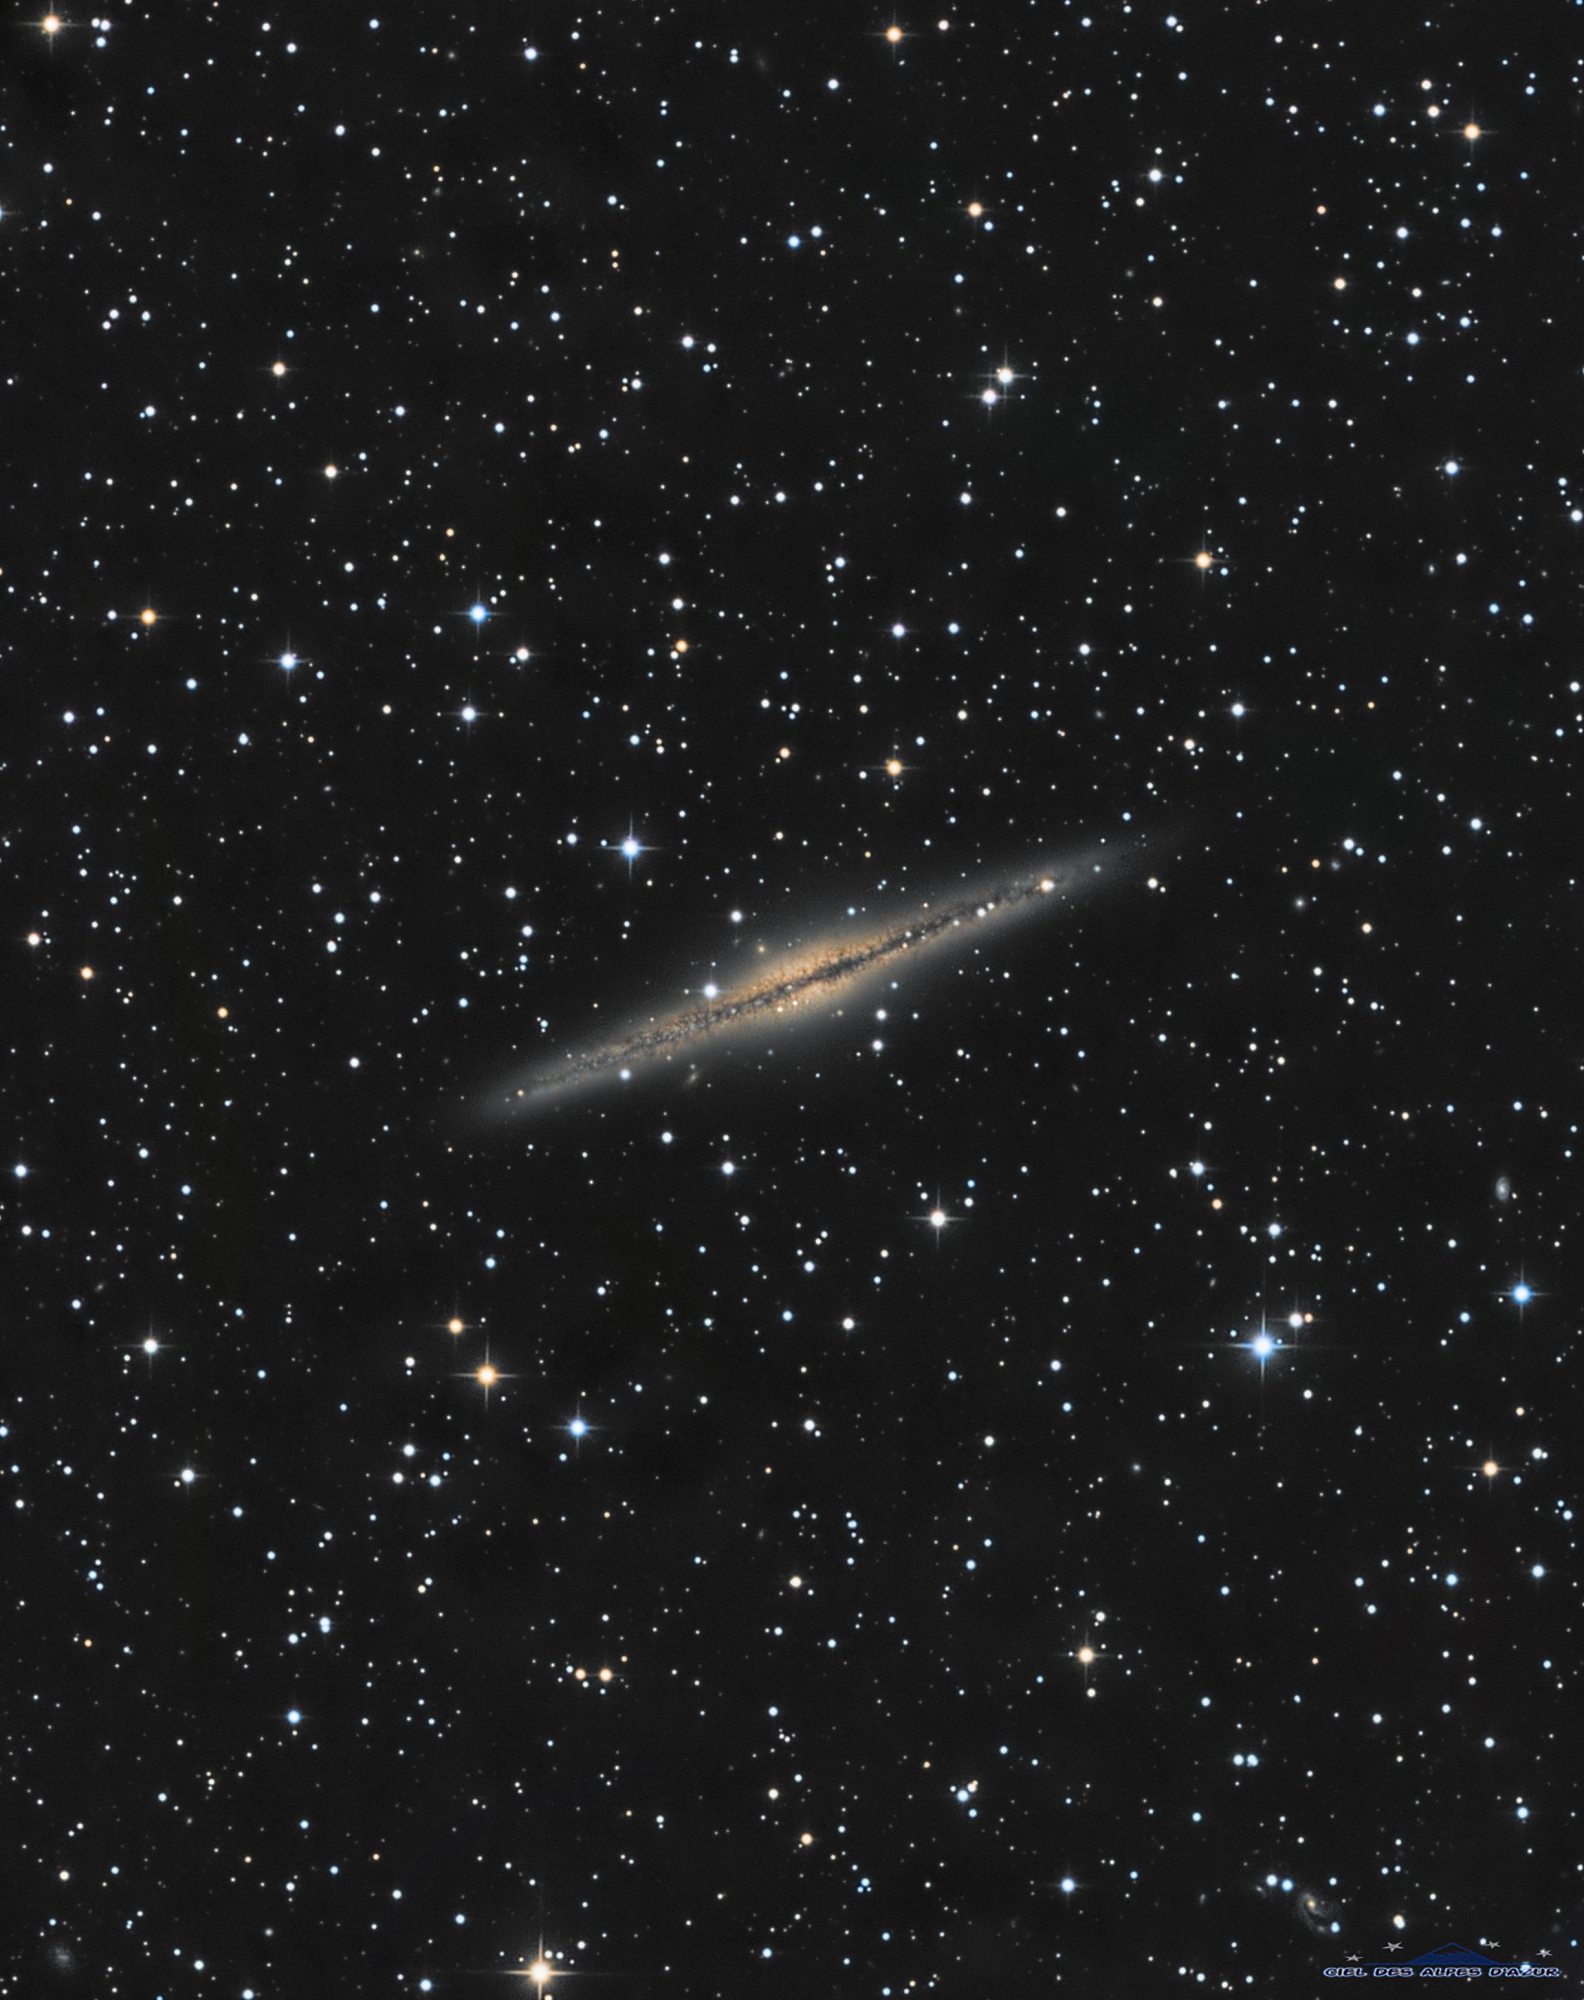 NGC_891_mod2.thumb.jpg.0358aa618dbc901dcc565a1bef079dfb.jpg